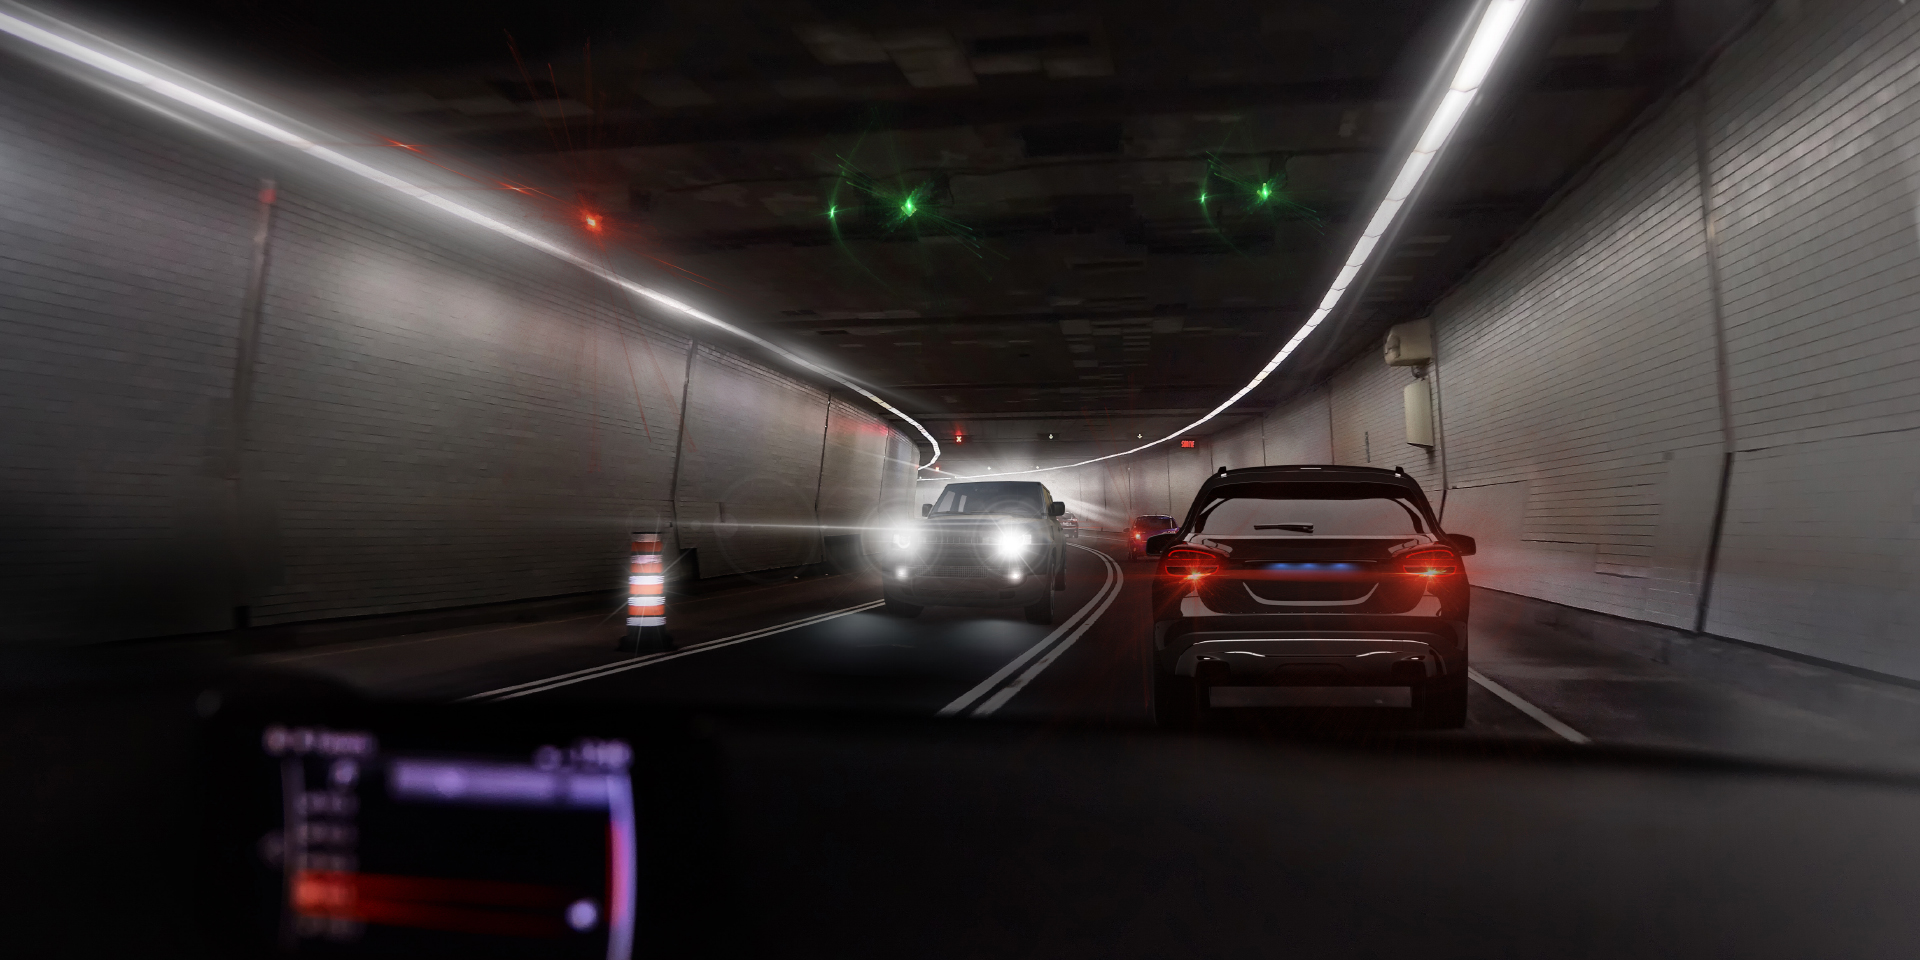 Duas imagens do ponto de vista de um motorista dirigindo em um túnel com trânsito vindo no sentido oposto mostrando, em uma das imagens, ofuscamento provocado pelo carro e pelas luzes do túnel e, na outra imagem, uma nítida redução desse ofuscamento.